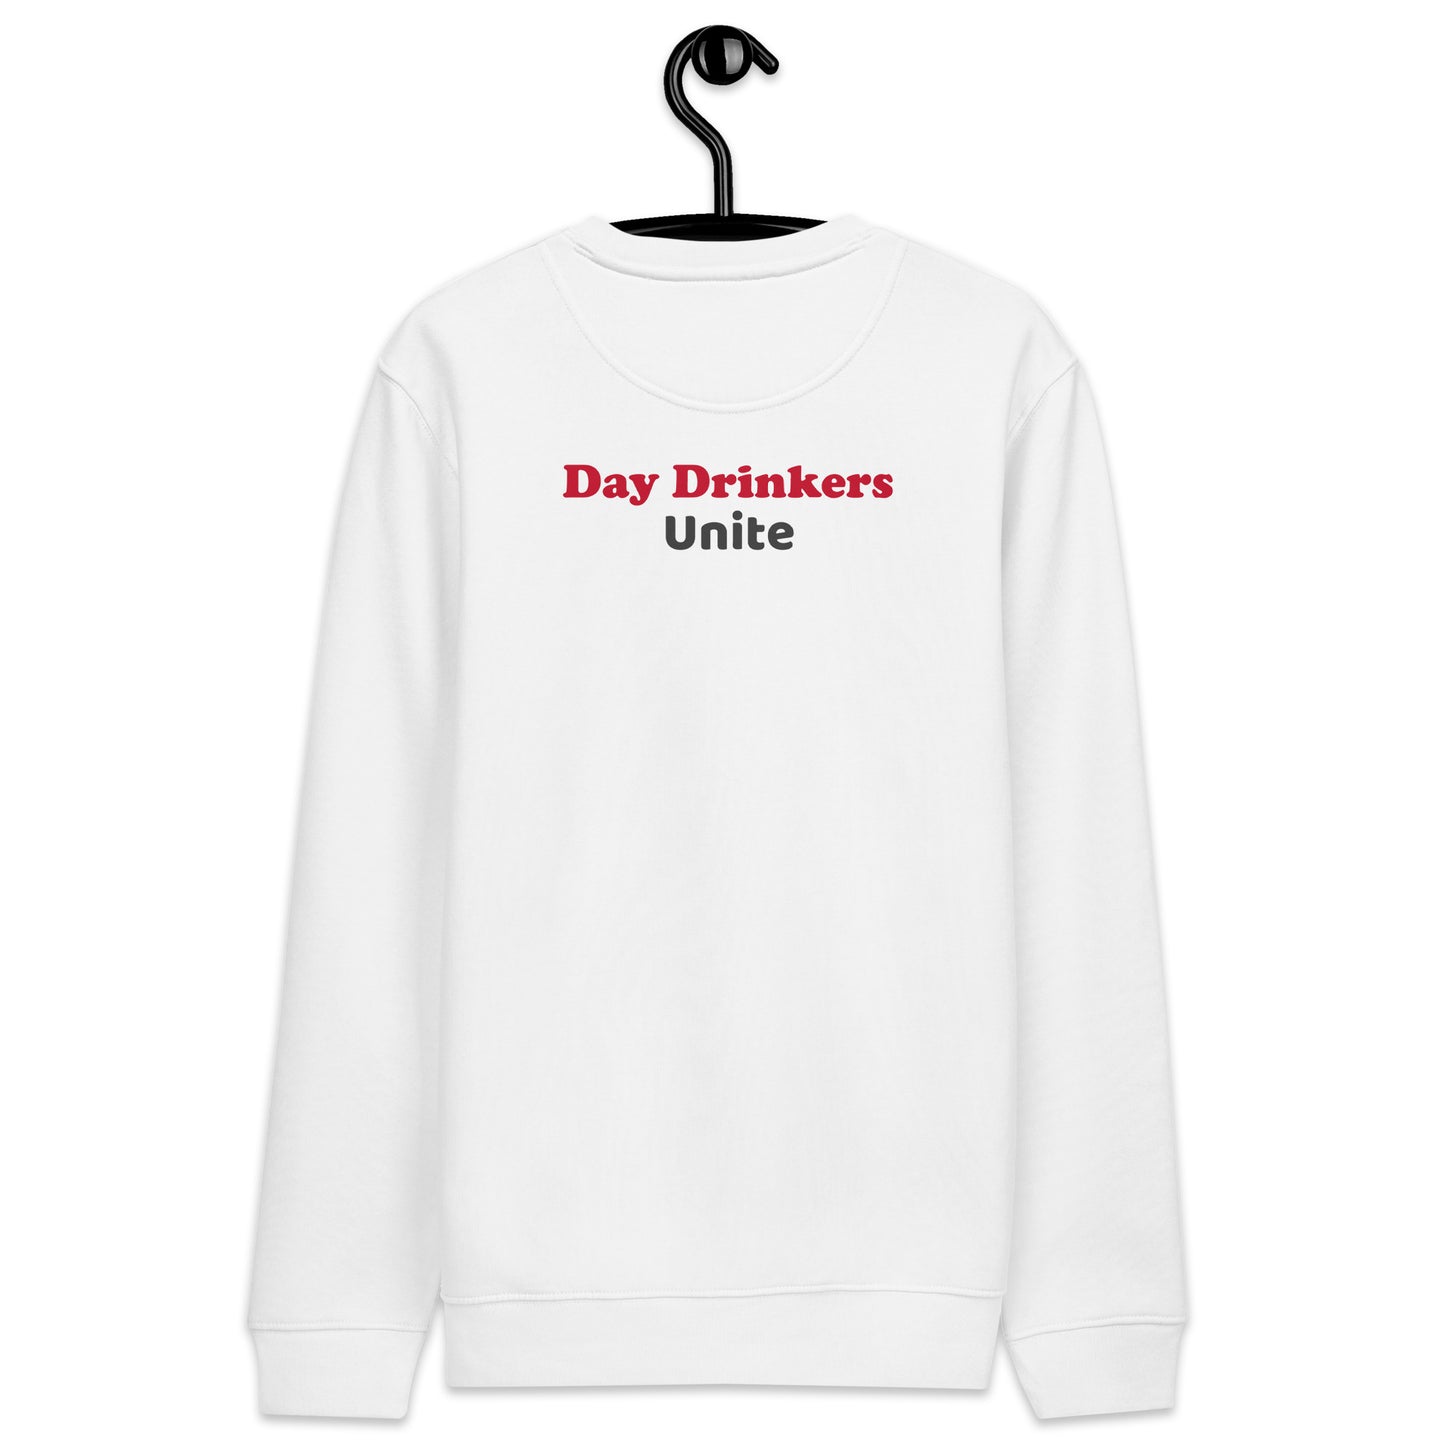 Day Drinkers Unite eco sweatshirt